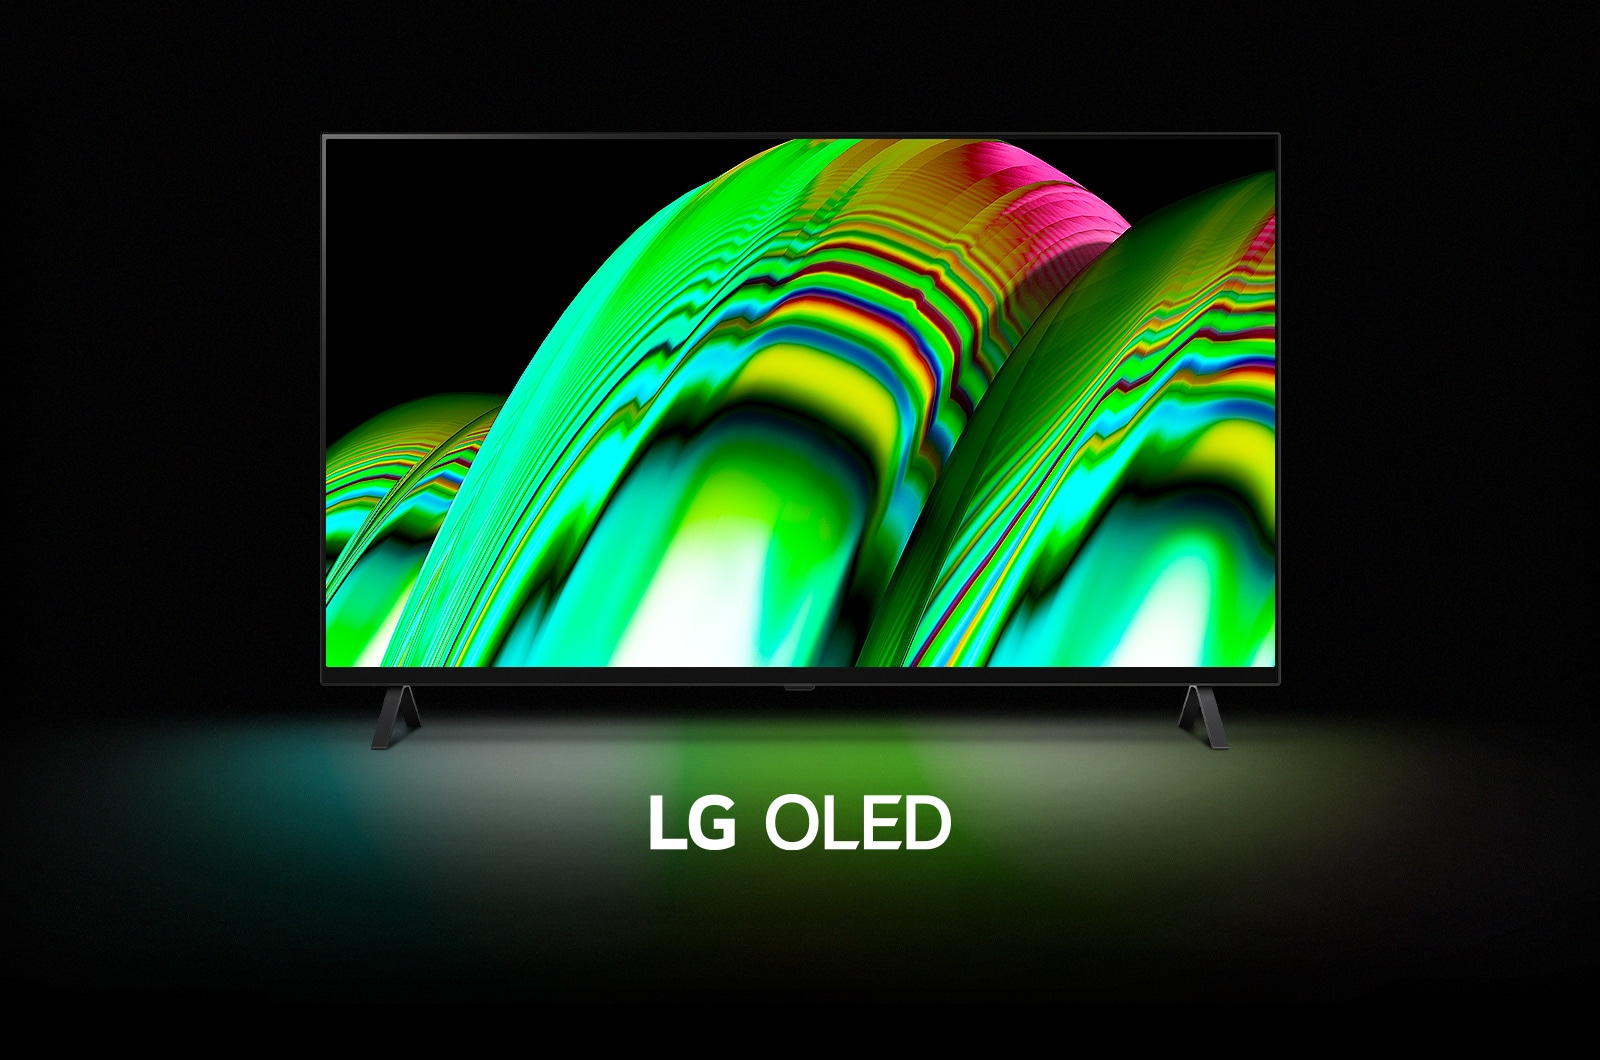 Синий абстрактный волнистый узор заполняет экран, а затем постепенно уменьшается и оЗеленый абстрактный волнистый узор заполняет экран, а затем постепенно уменьшается и открывается LG OLED A2. Экран темнеет, затем снова появляется волнообразный узор с надписью «LG OLED» под ним.ткрывается LG OLED B2. Экран темнеет, затем снова появляется волнообразный узор с надписью «LG OLED» под ним.